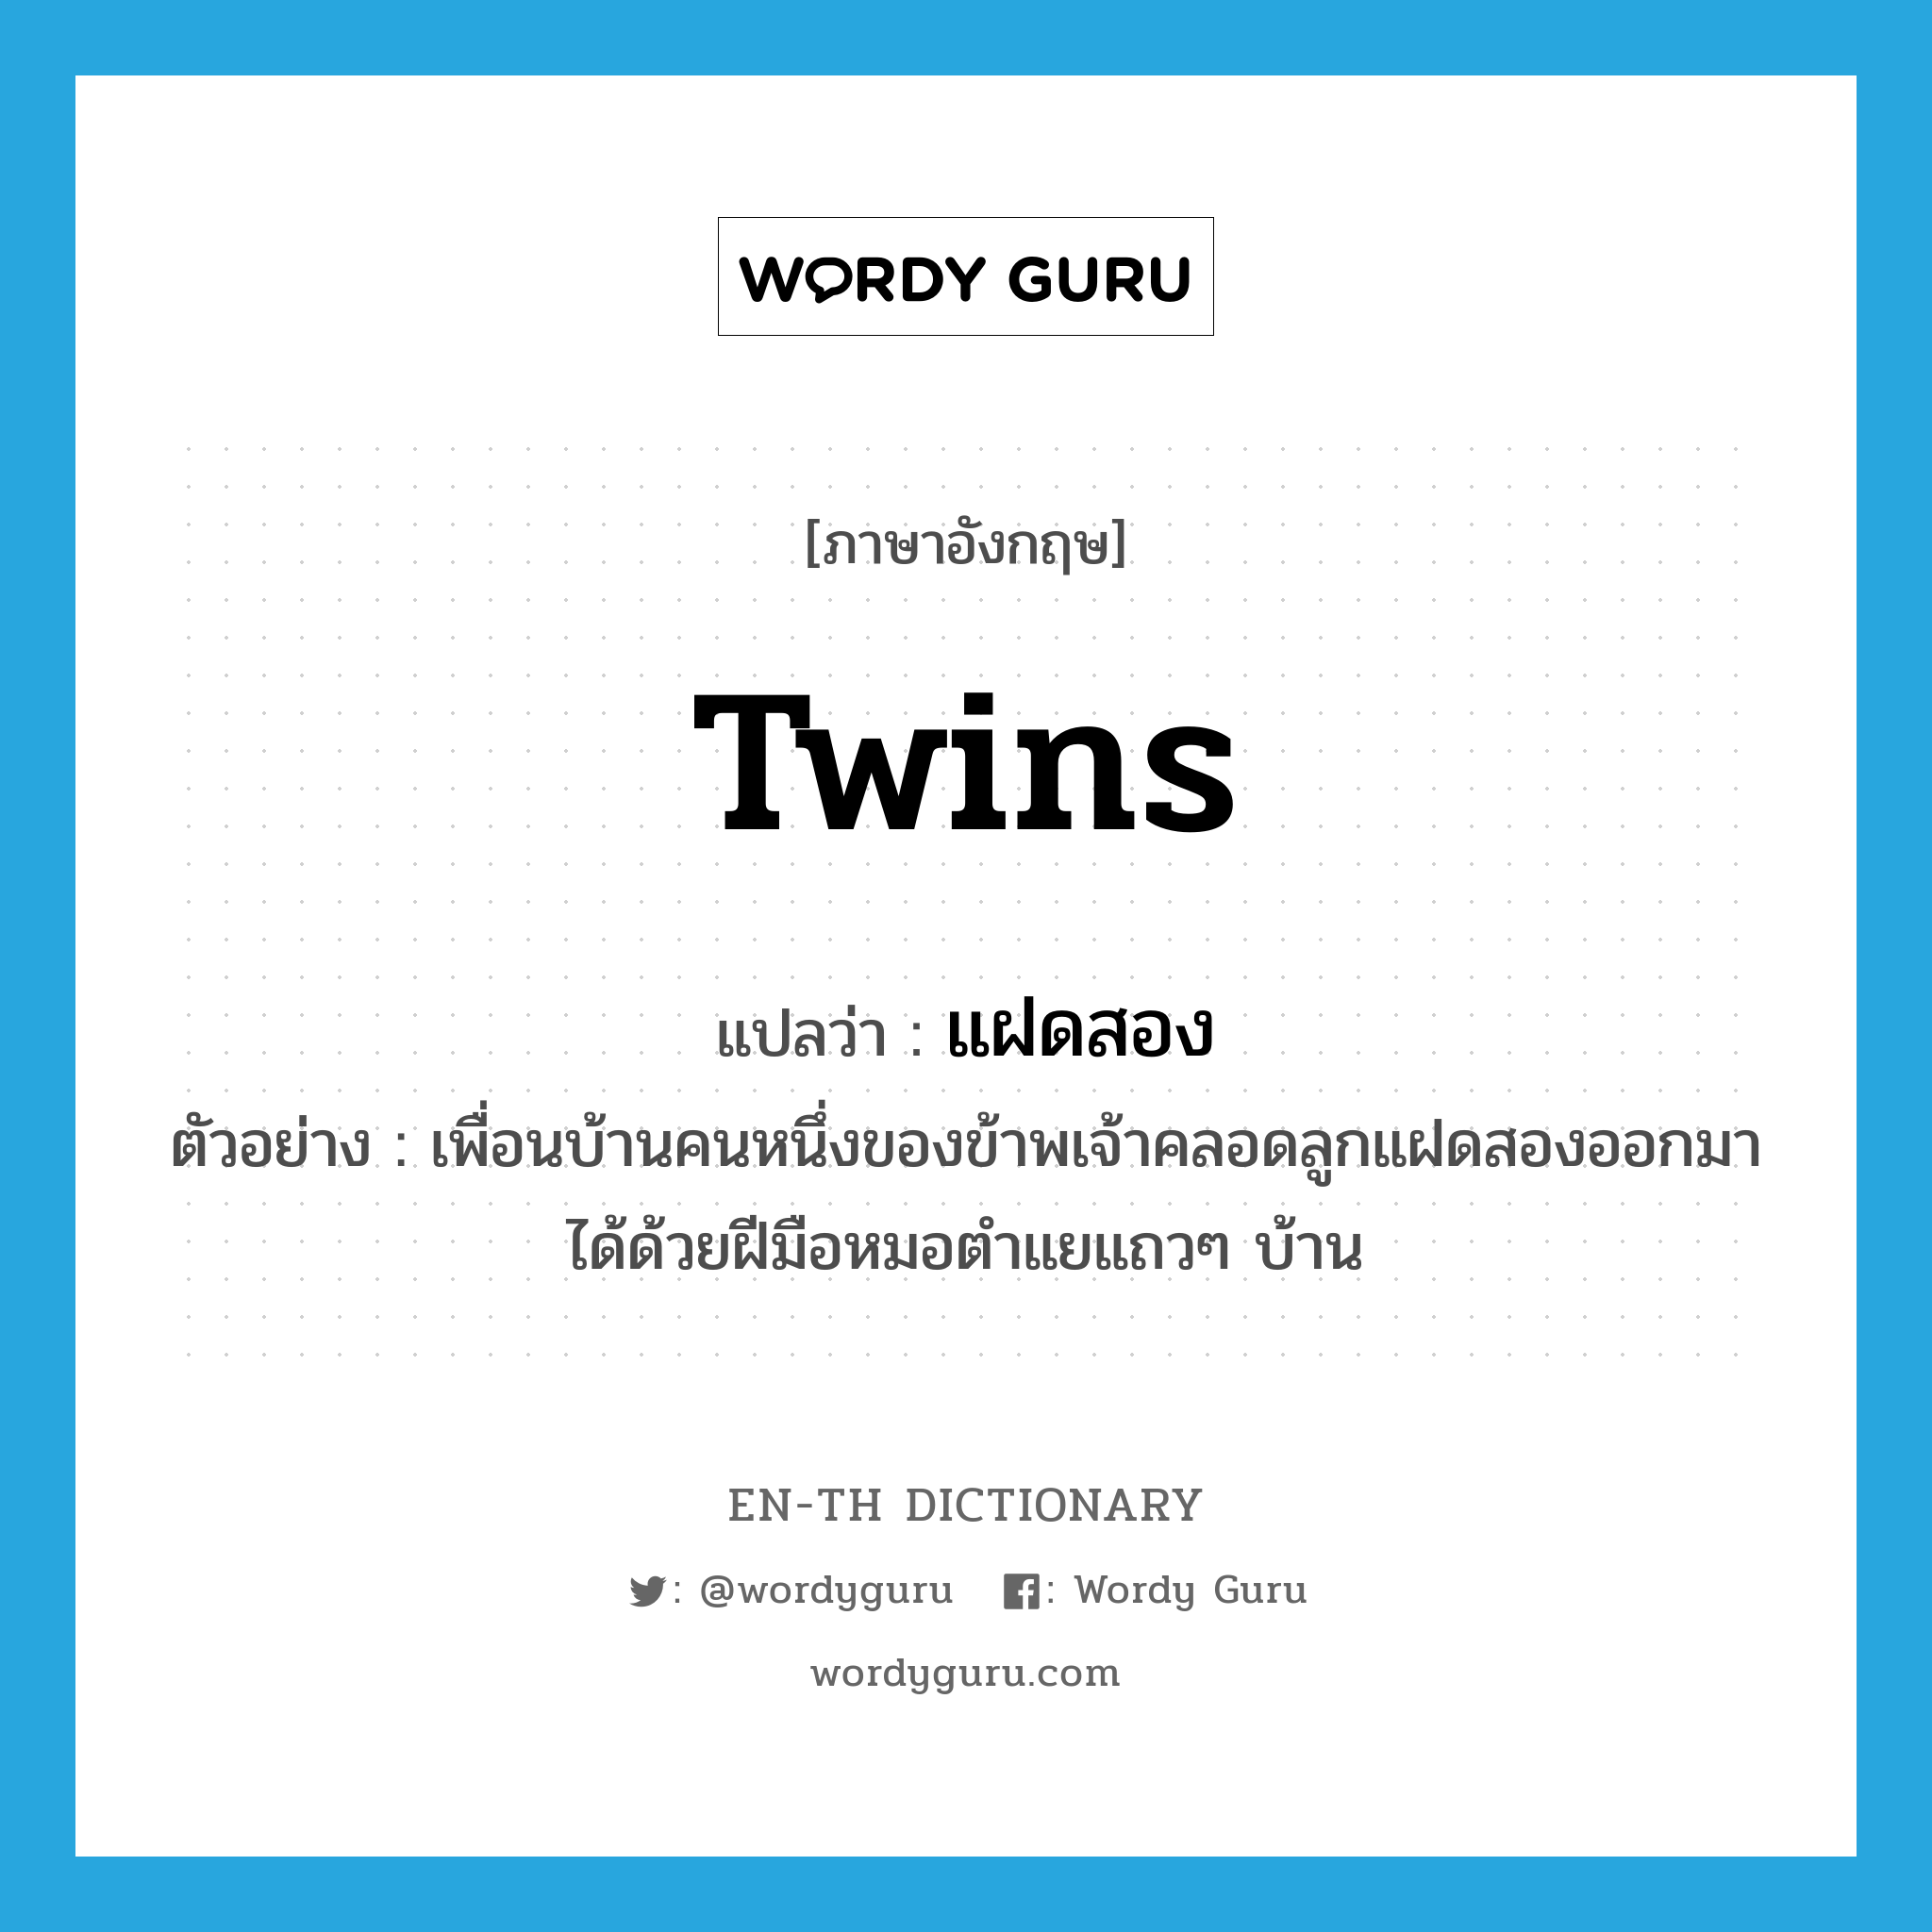 แฝดสอง ภาษาอังกฤษ?, คำศัพท์ภาษาอังกฤษ แฝดสอง แปลว่า twins ประเภท N ตัวอย่าง เพื่อนบ้านคนหนึ่งของข้าพเจ้าคลอดลูกแฝดสองออกมาได้ด้วยฝีมือหมอตำแยแถวๆ บ้าน หมวด N